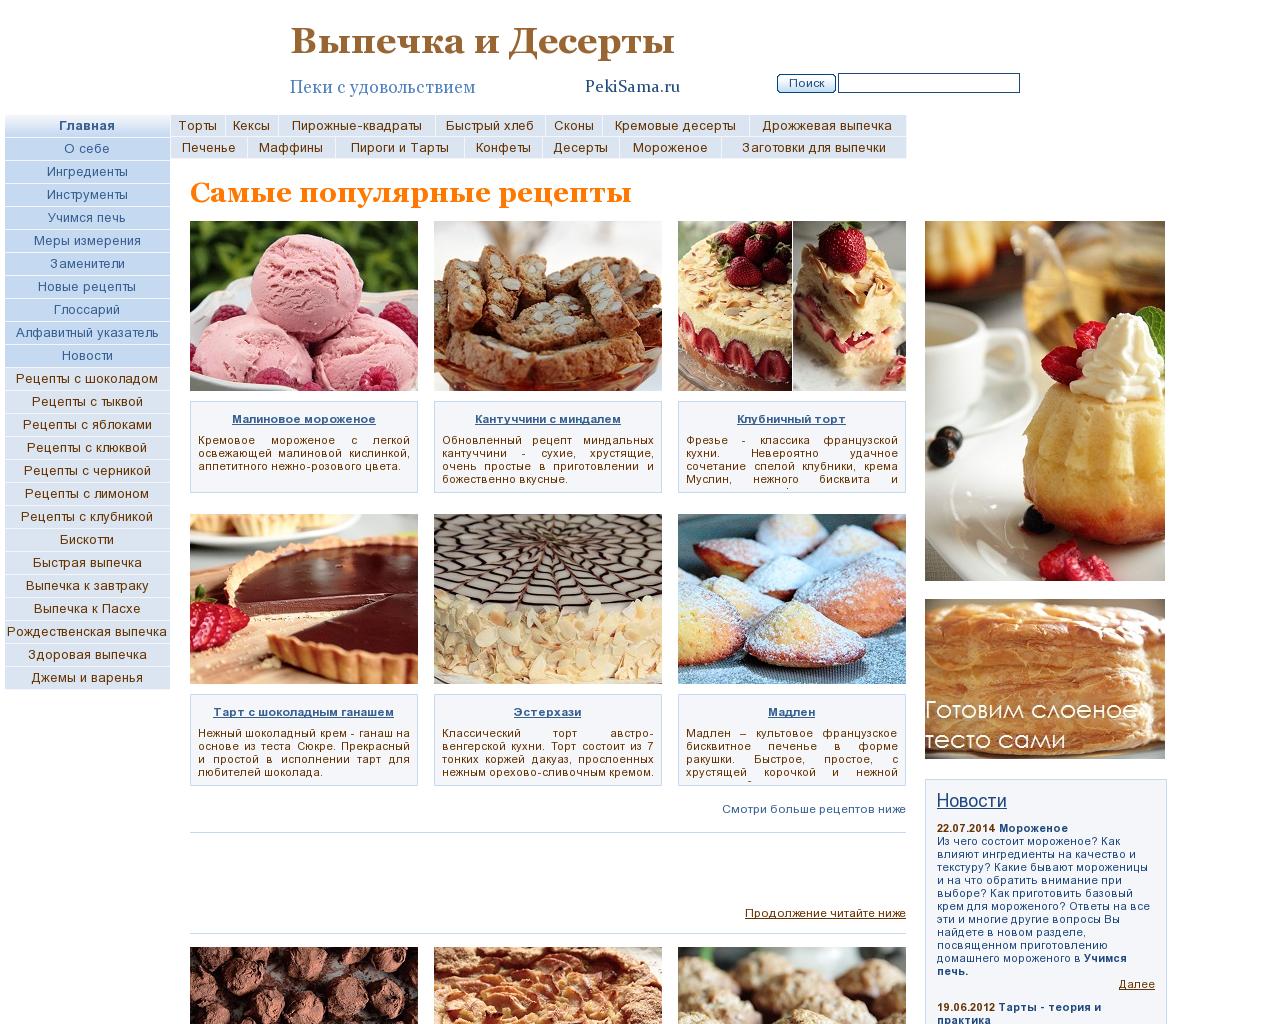 Изображение сайта pekisama.ru в разрешении 1280x1024